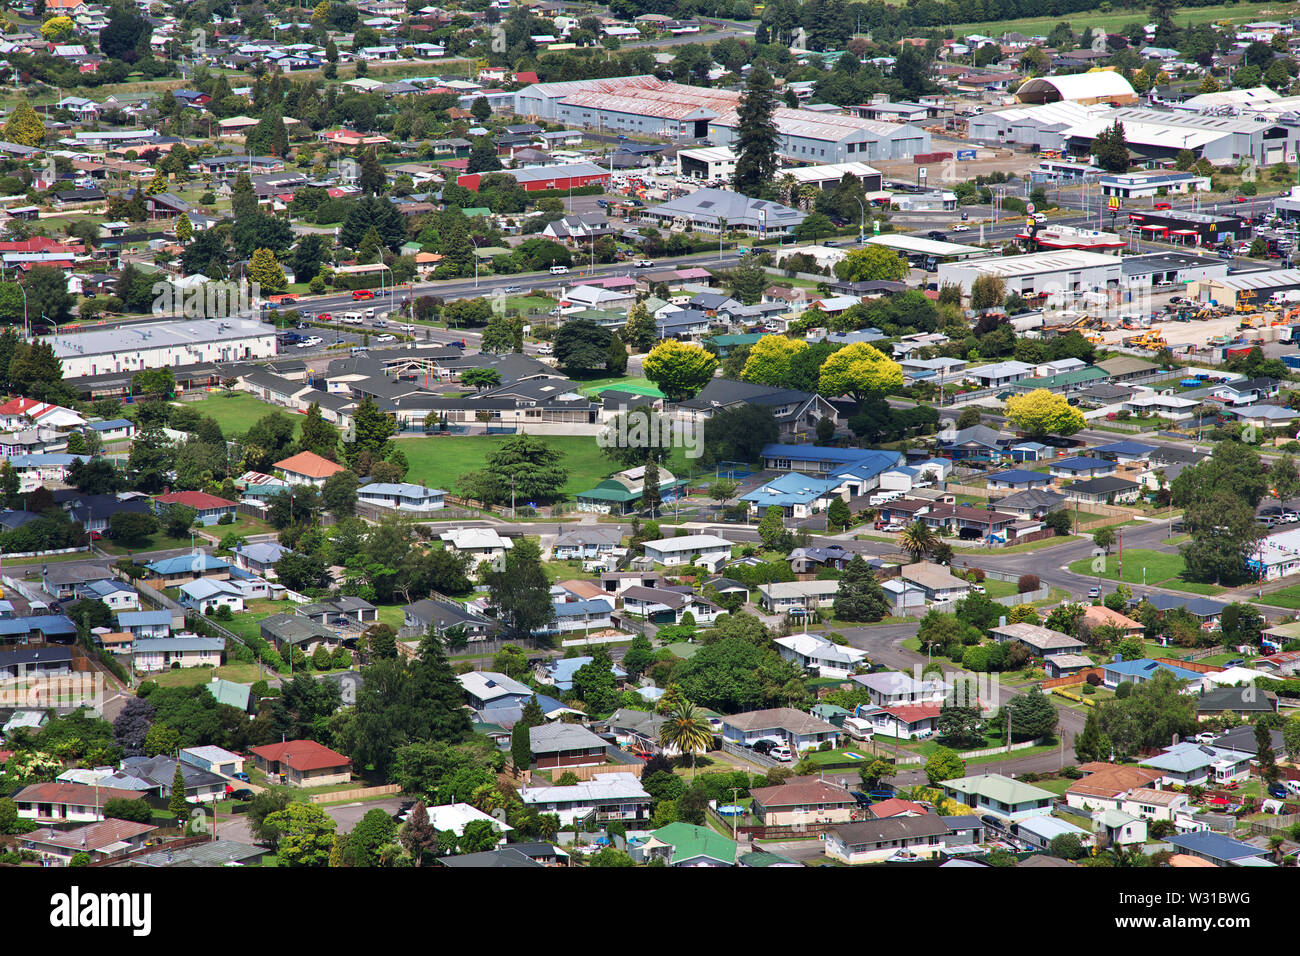 Rotorua city by the lake, New Zealand Stock Photo